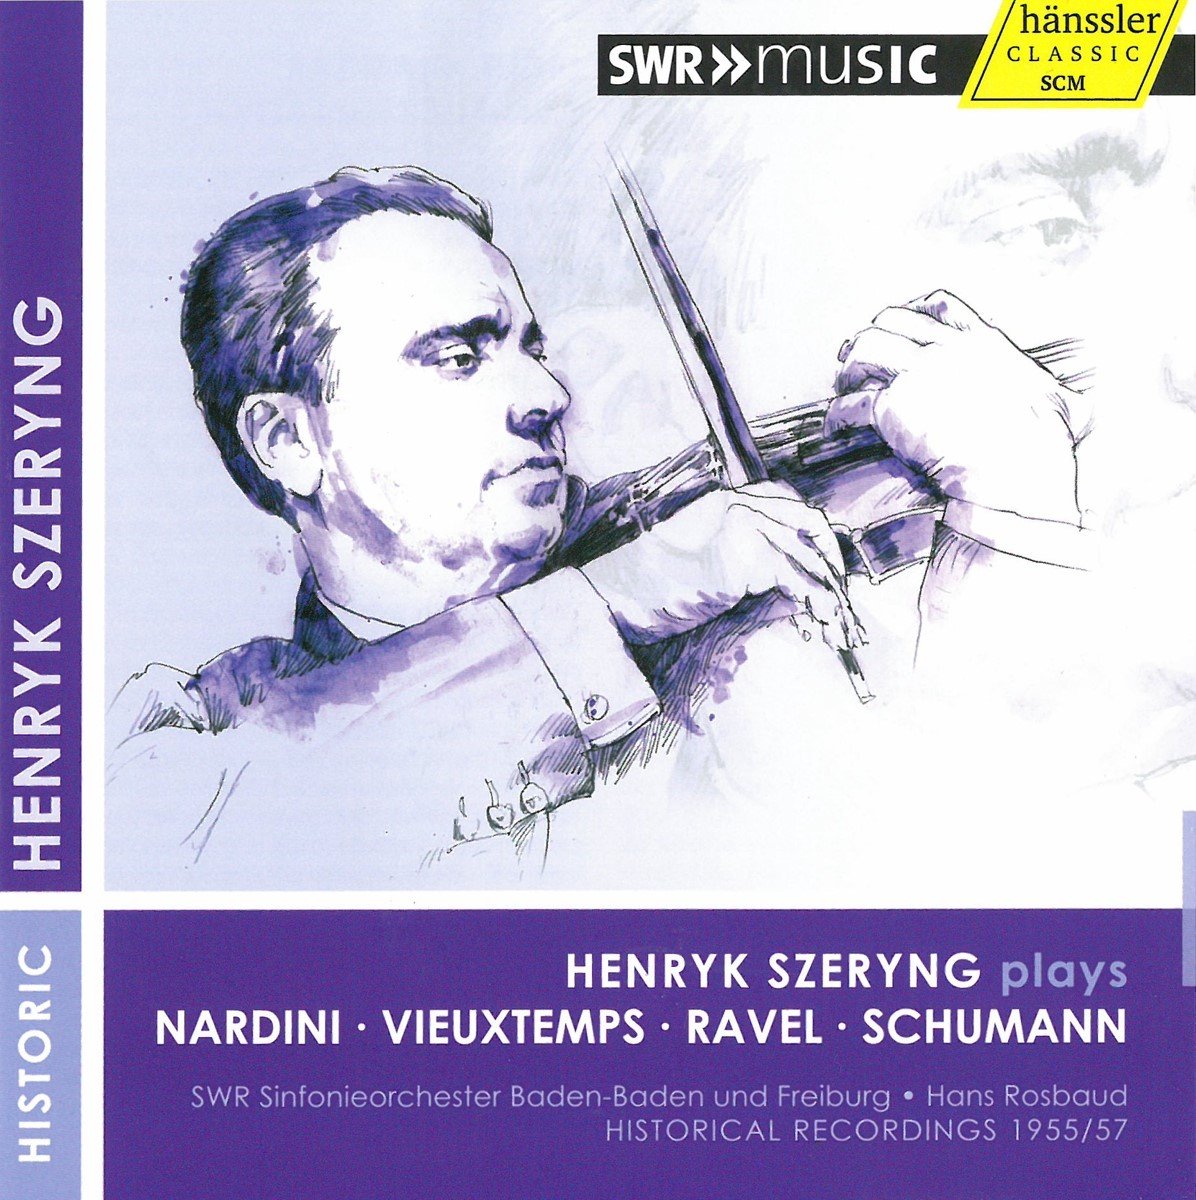 Szeryng, Henryk - Rosbaud, Hans - So Baden-Baden, - Henryk Szeryng Plays Nardini, Vieuxtemps, Ravel, S (CD) - Szeryng, Henryk - Rosbaud, Hans - So Baden-Baden,